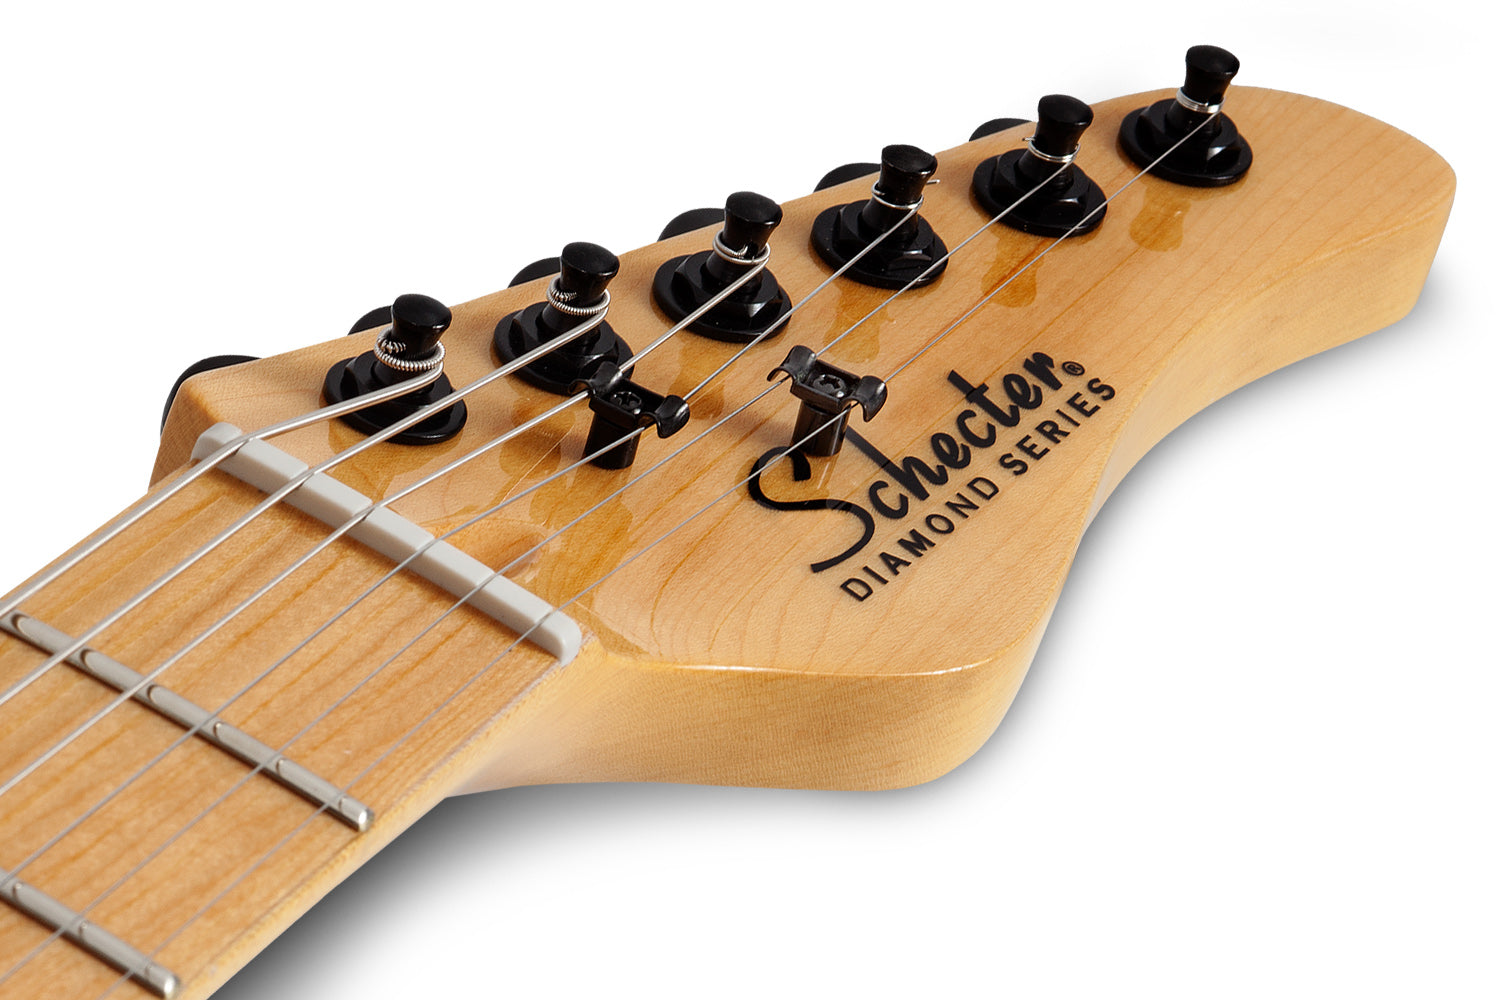 Schecter PT-MM-BLK Gloss Black Guitar with Schecter Super Rock II 2140-SHC